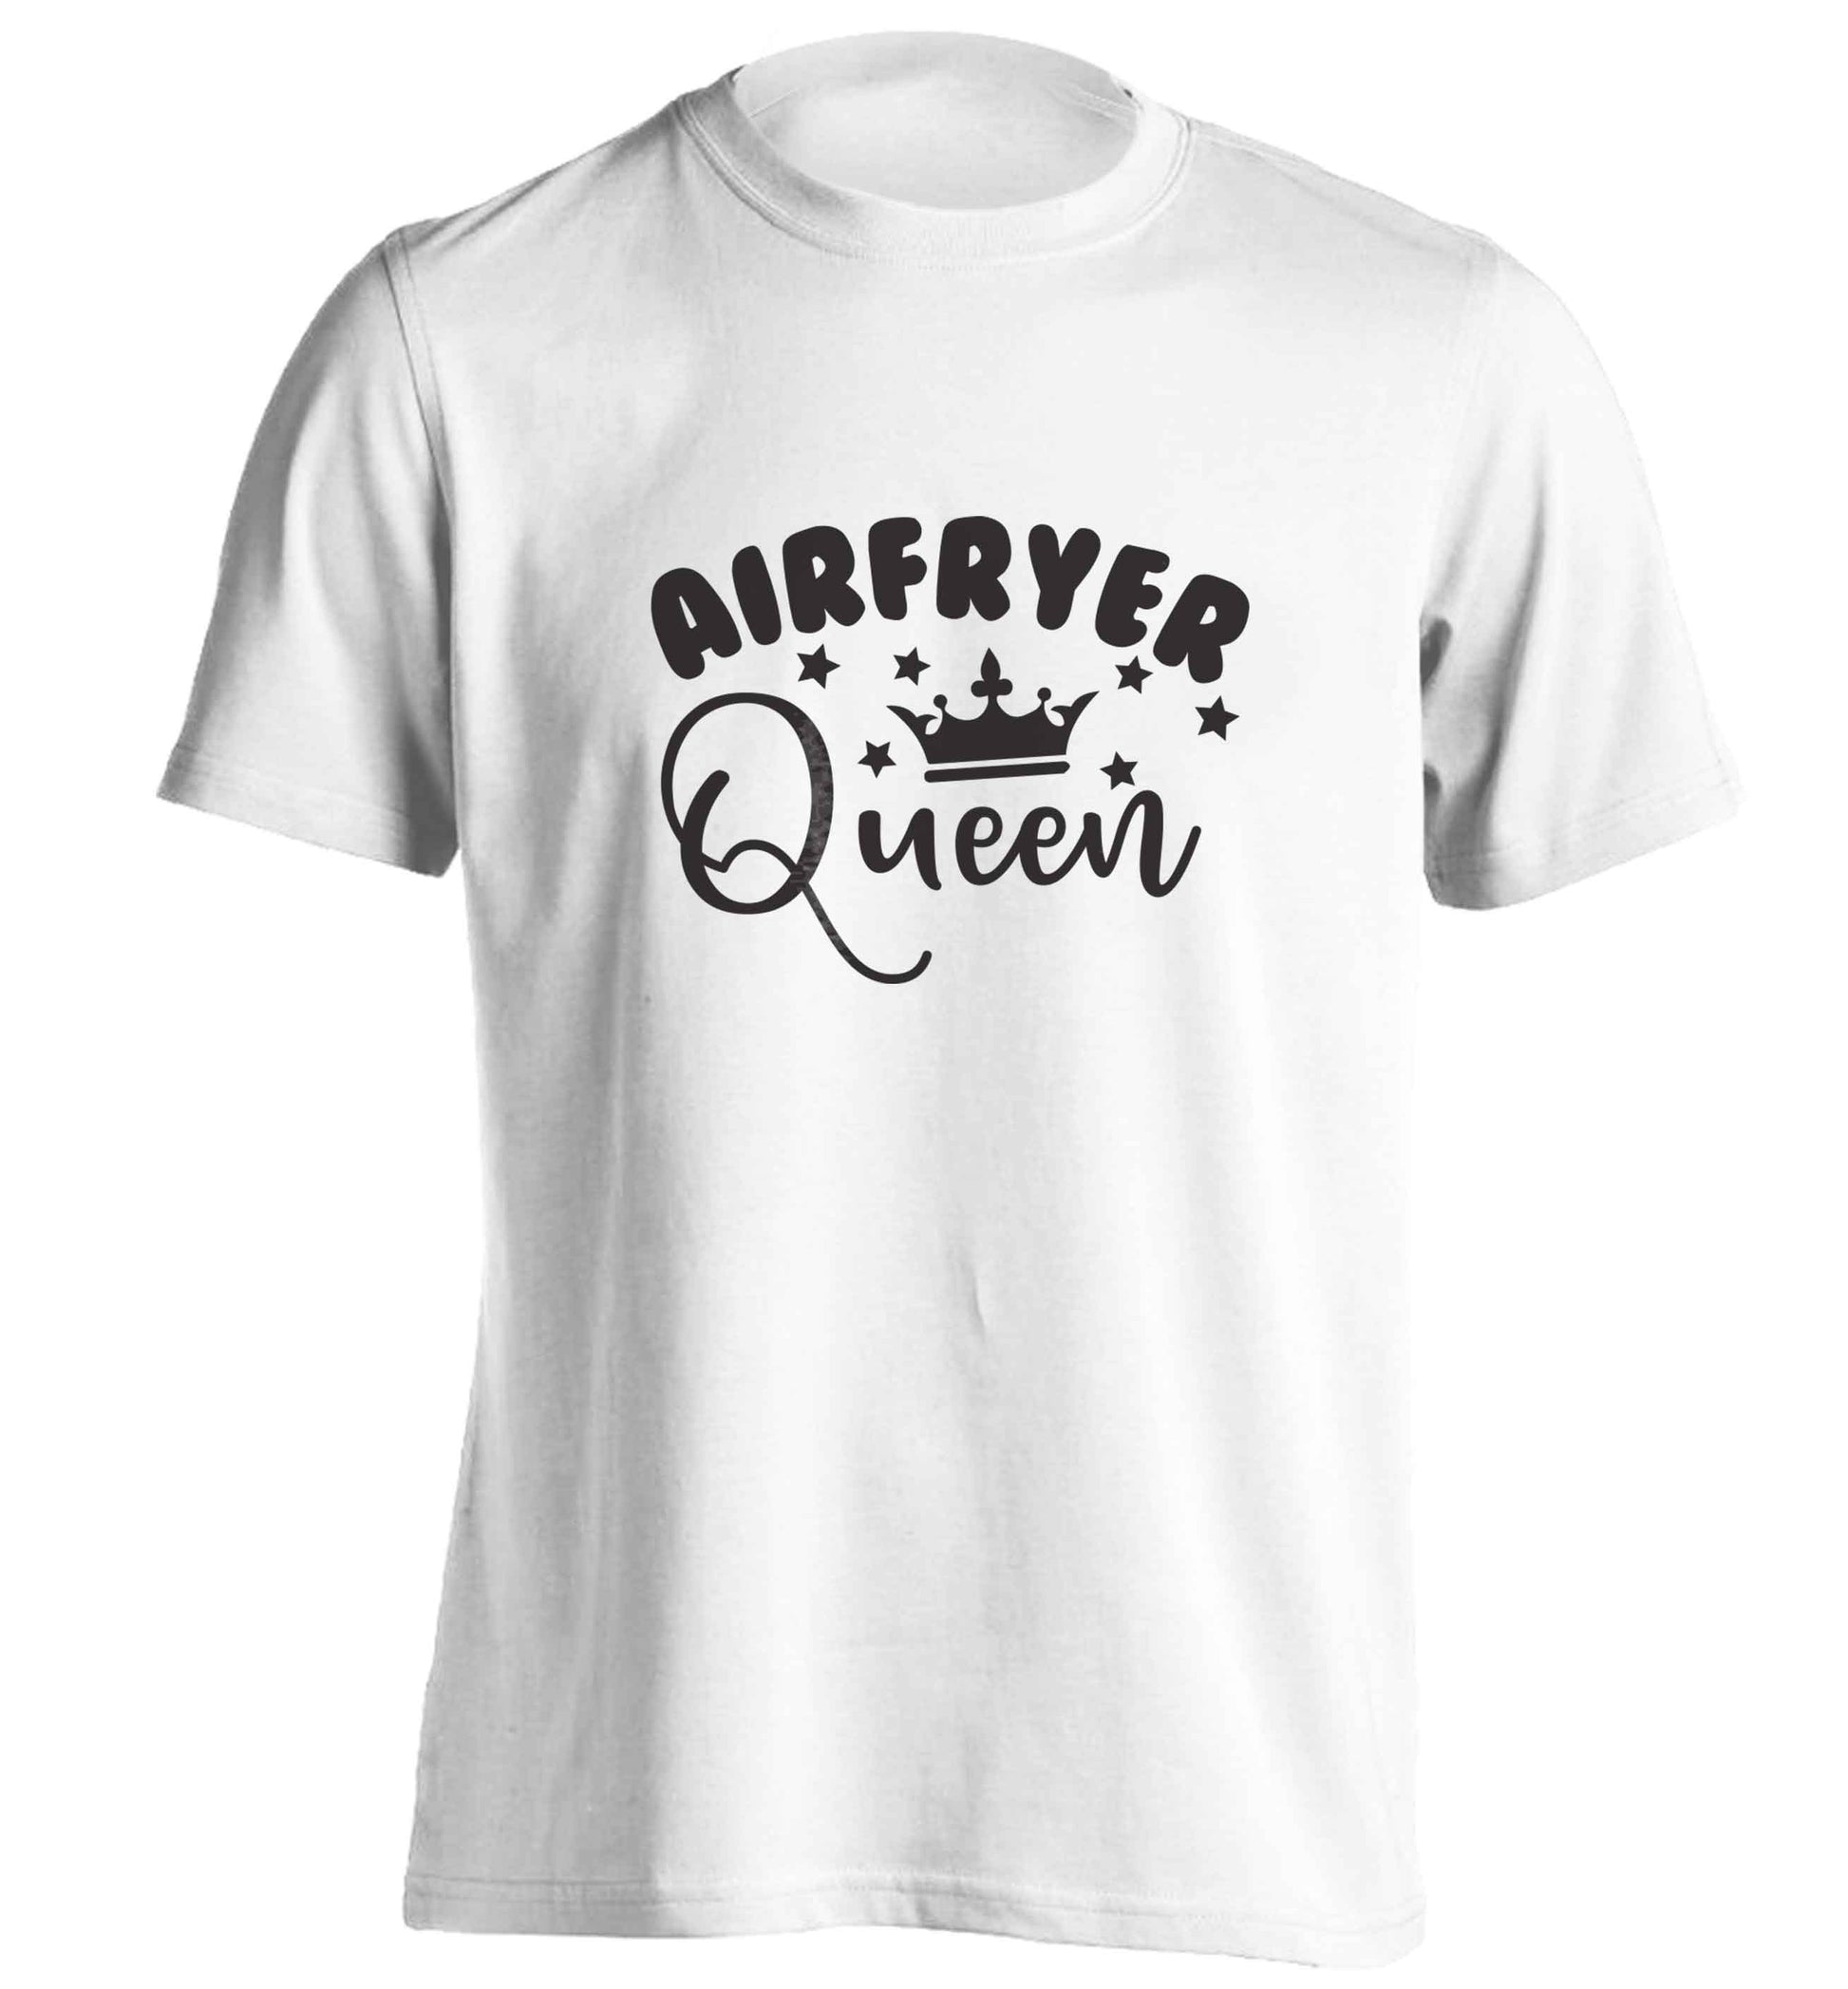 Airfryer queenadults unisex white Tshirt 2XL